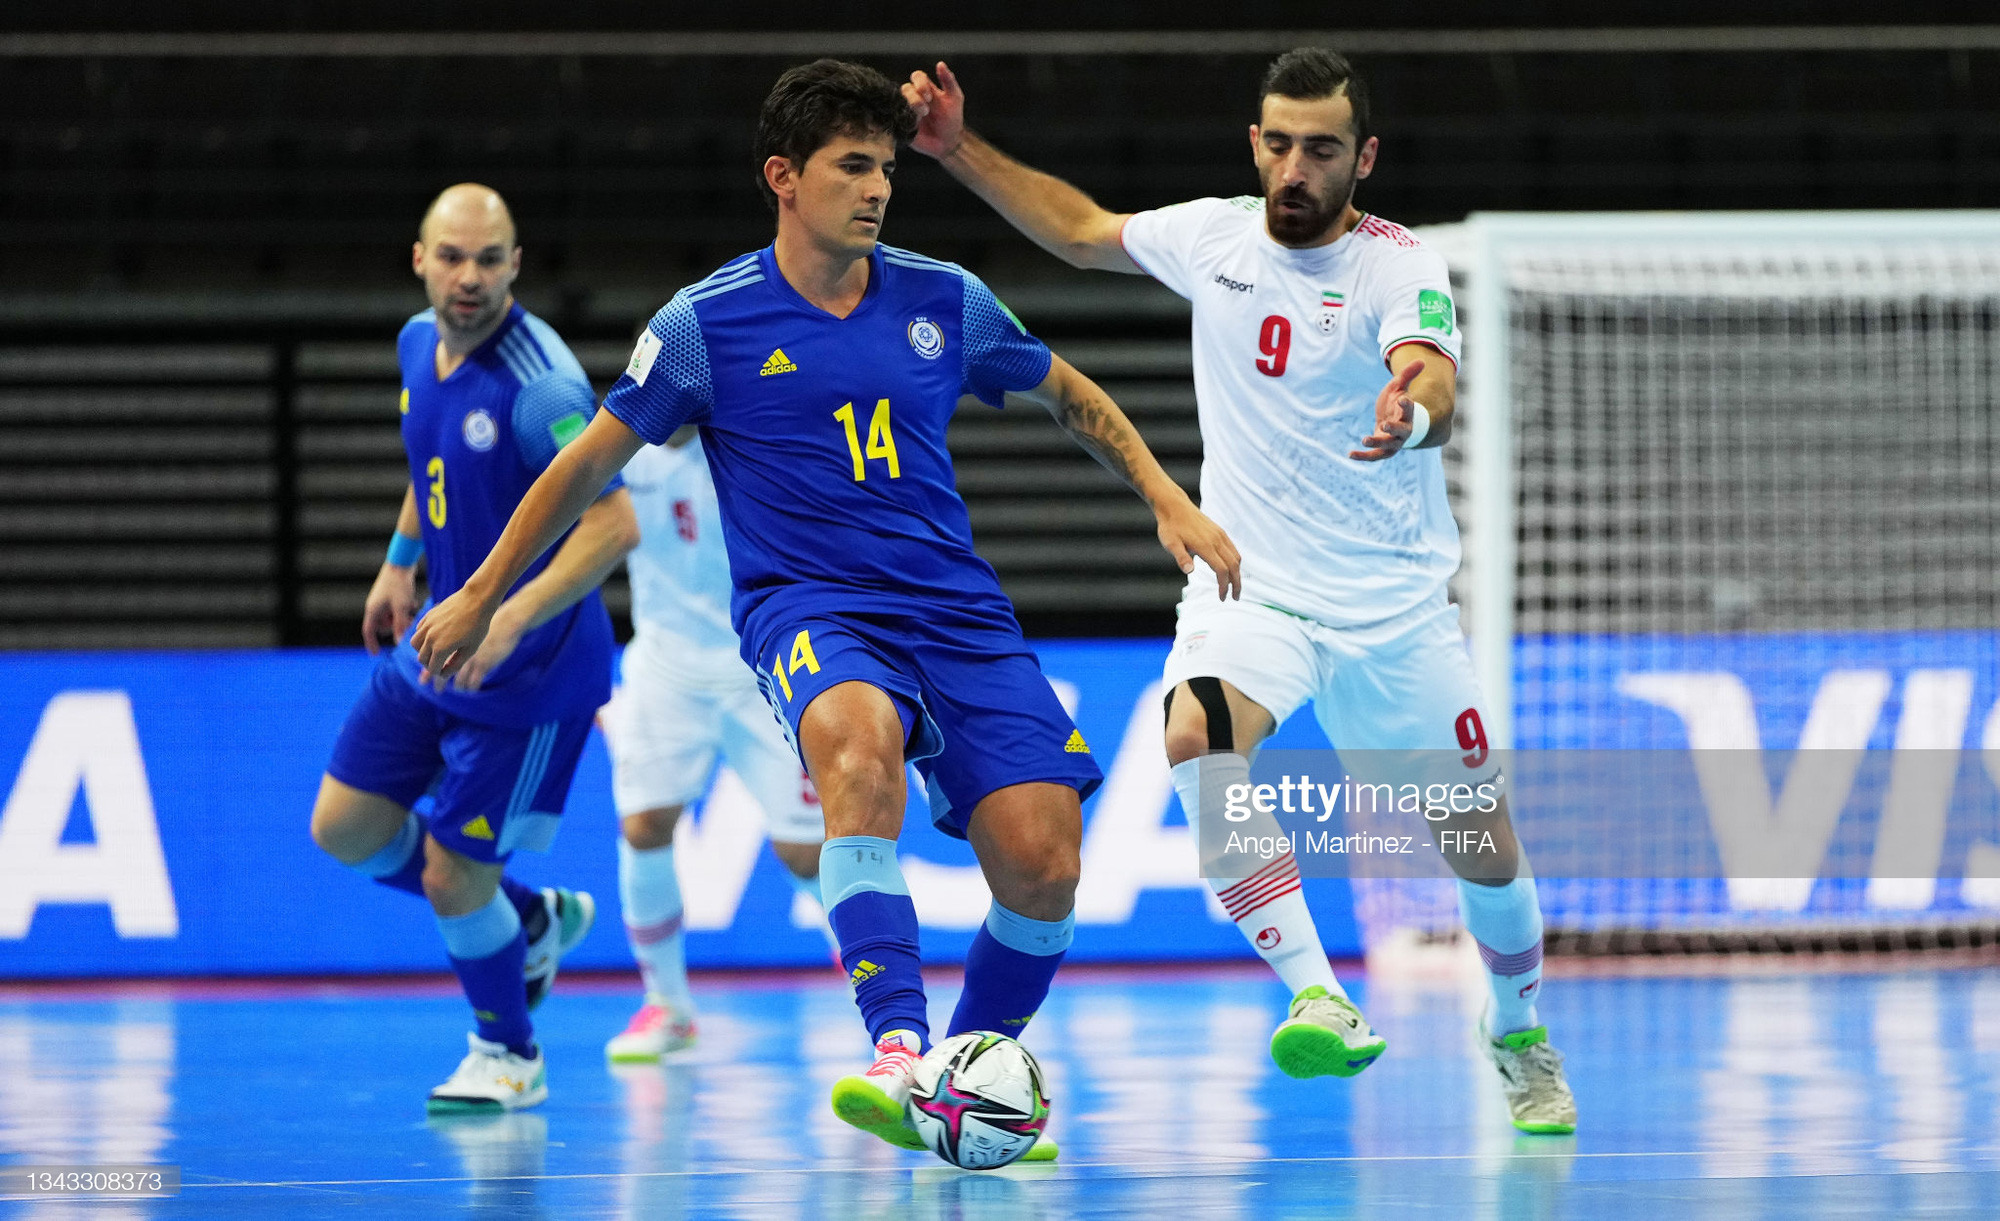 Đại diện cuối cùng của châu Á bị loại, Kazakhstan và Bồ Đào Nha bước vào bán kết Futsal World Cup 2021 - Ảnh 1.